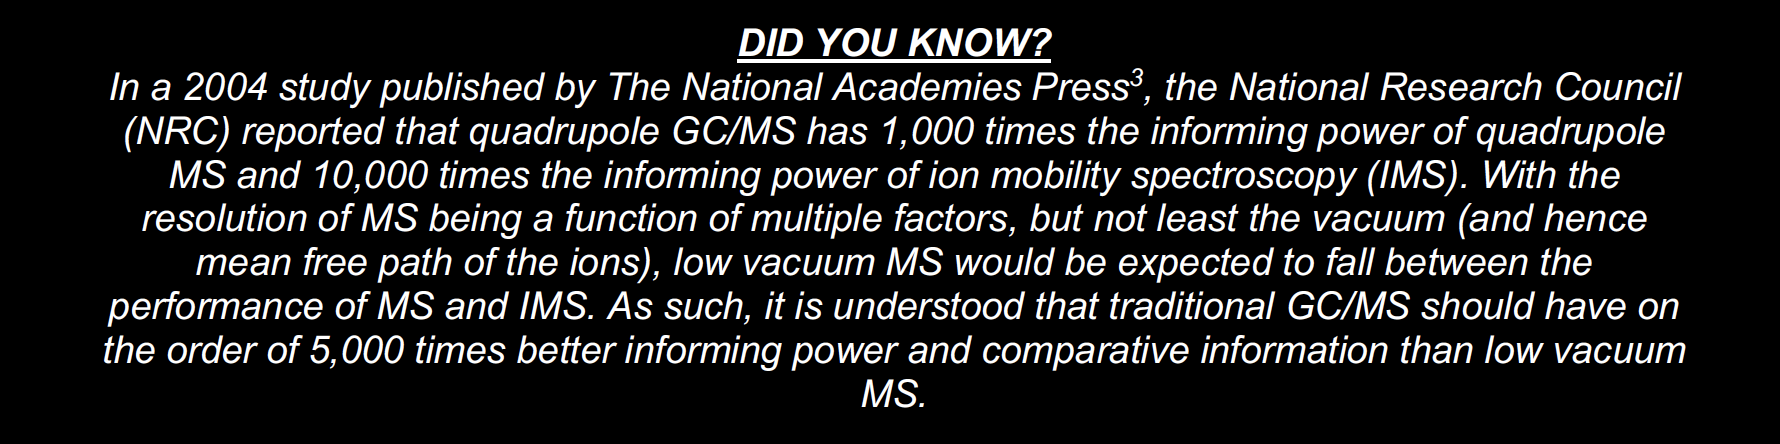 FLIR GCMS v HPMS Did You Know NRC.png